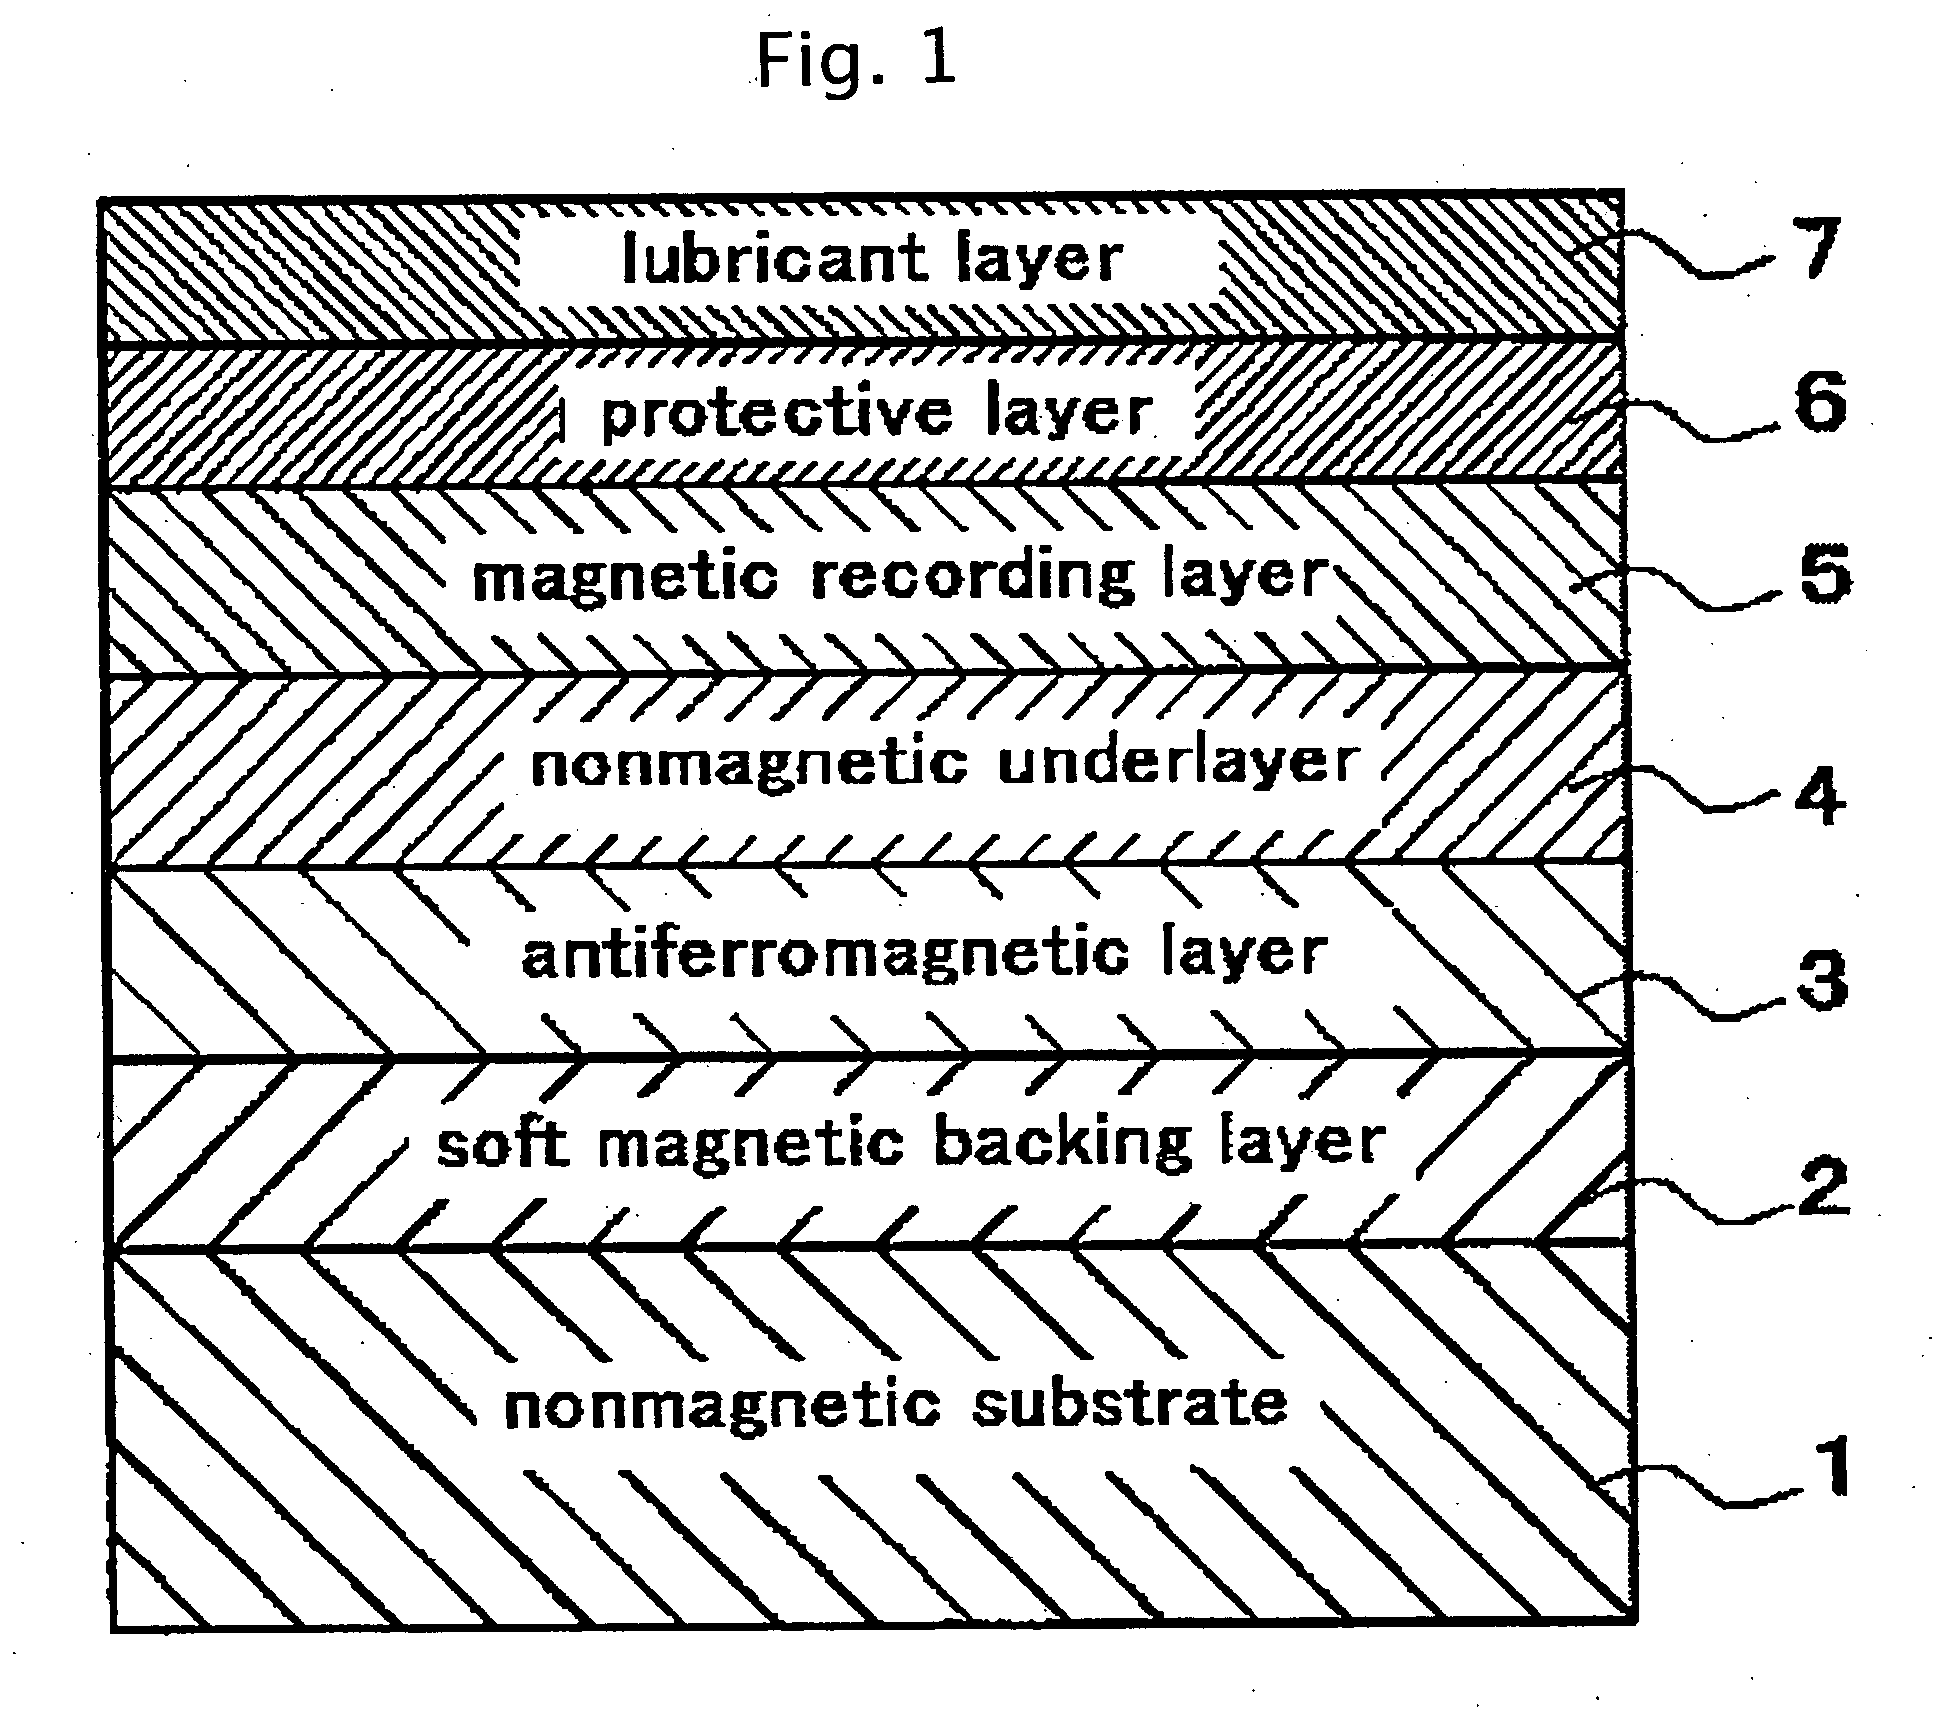 Perpendicular magnetic recording medium